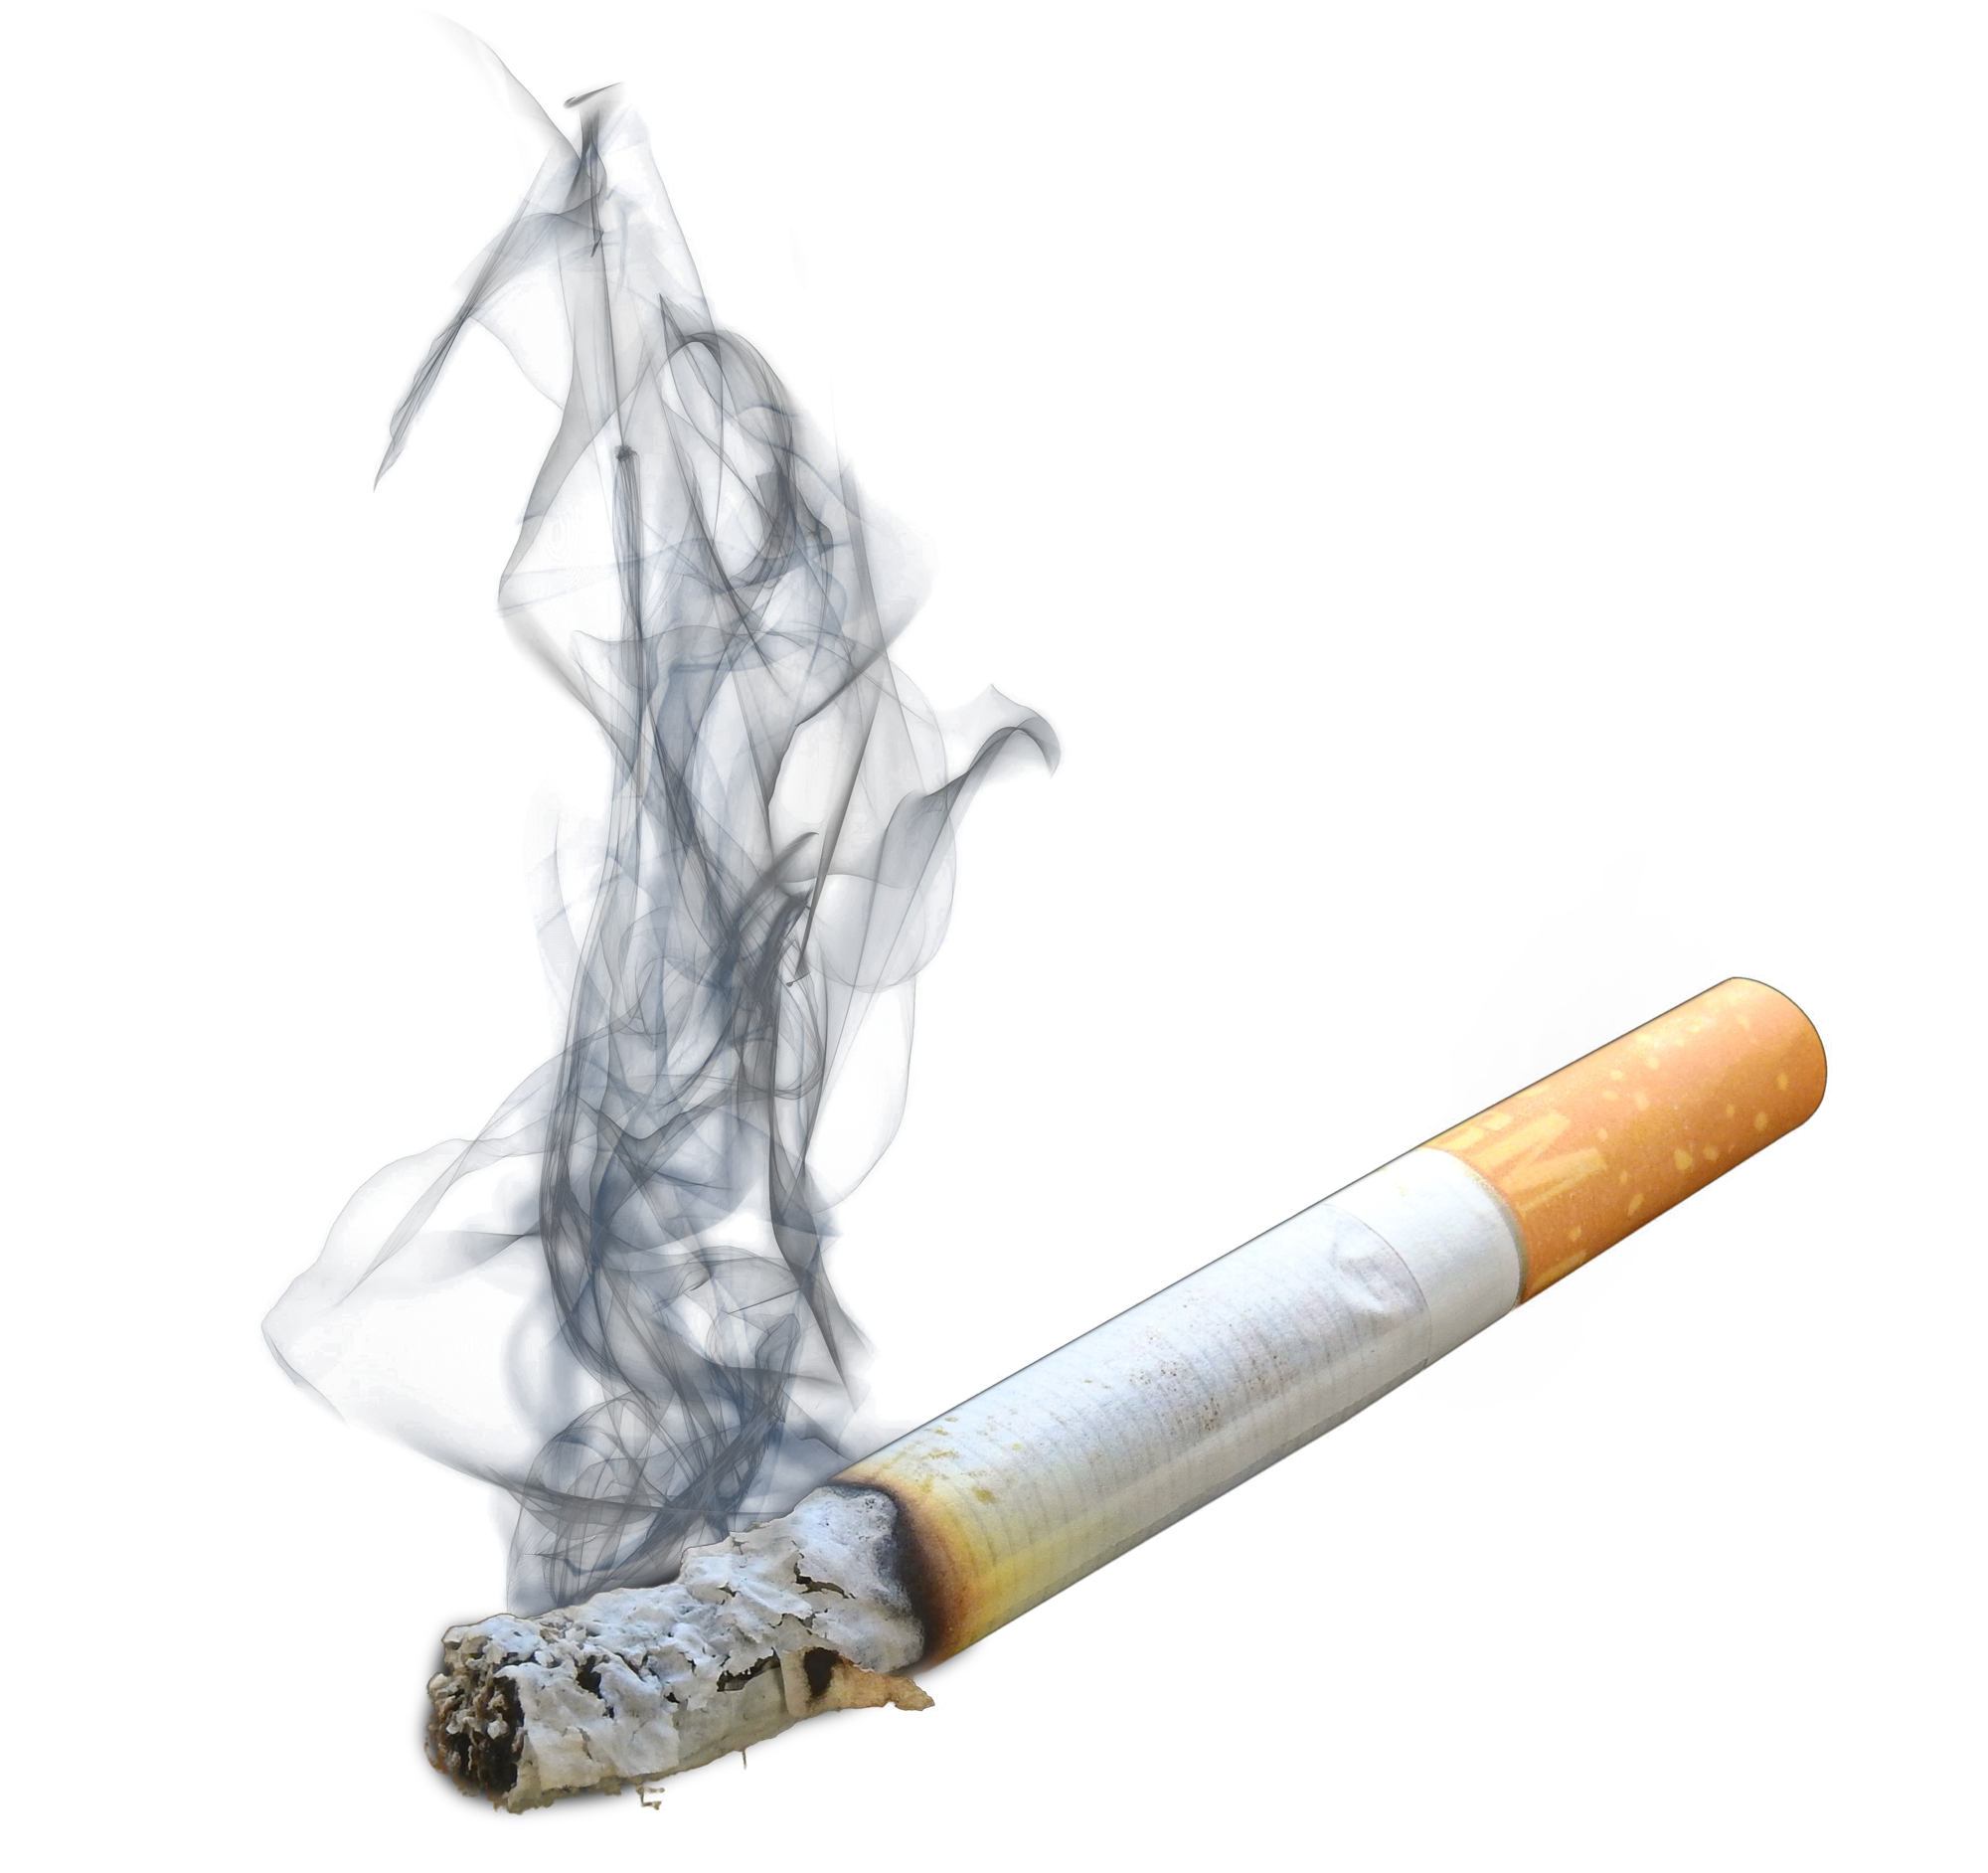 Сигарета на белом фоне с дымом